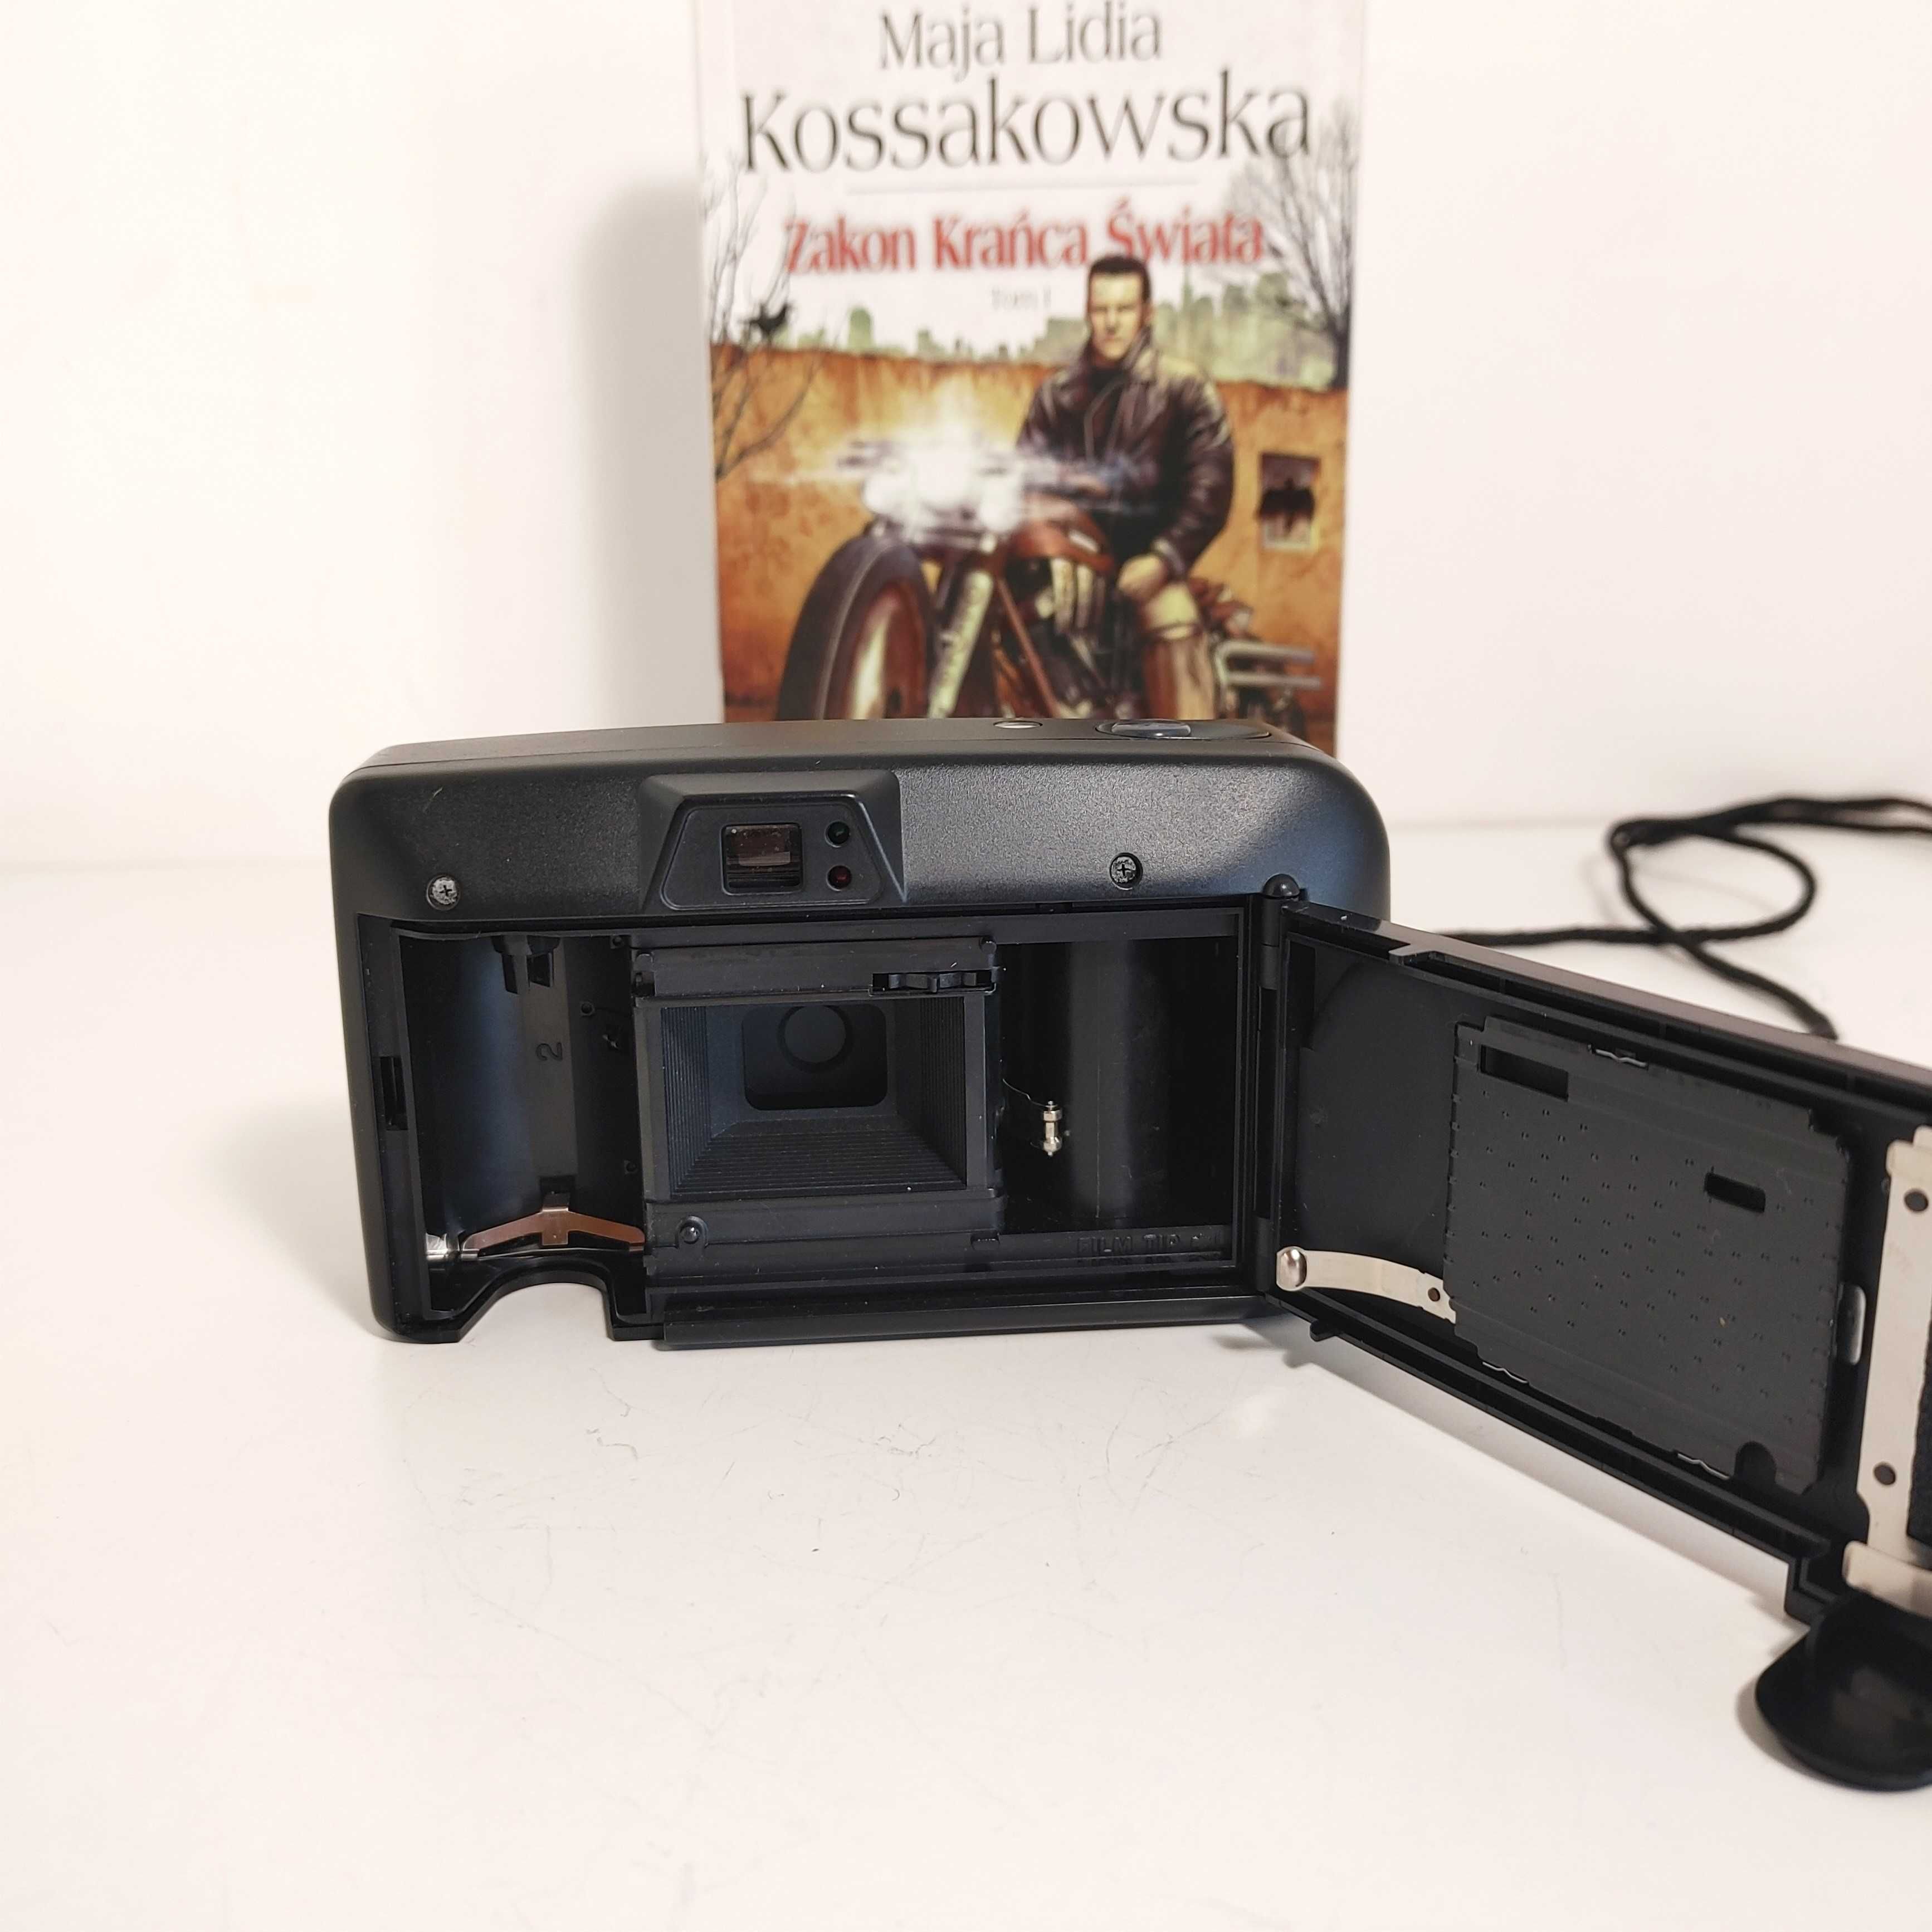 Analogowy aparat fotograficzny z 1995 roku MINOLTA C10 ładne RETRO